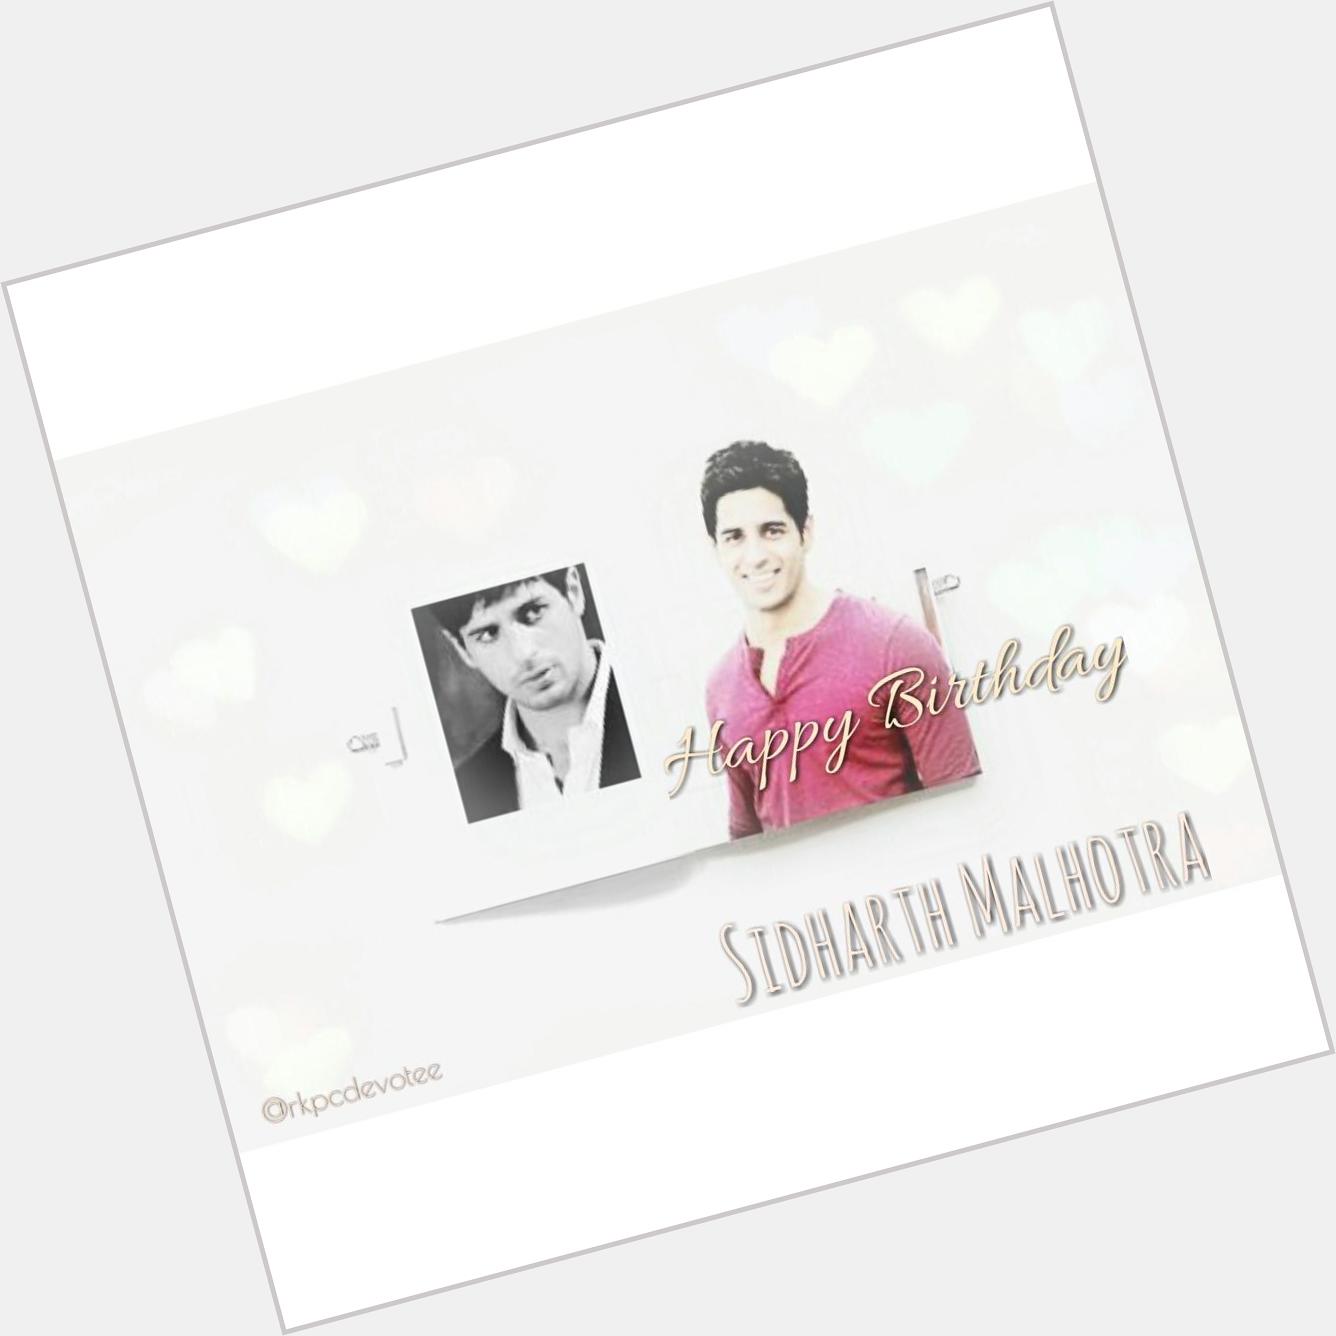 If you like it :D Happy Birthday Sidharth Malhotra 